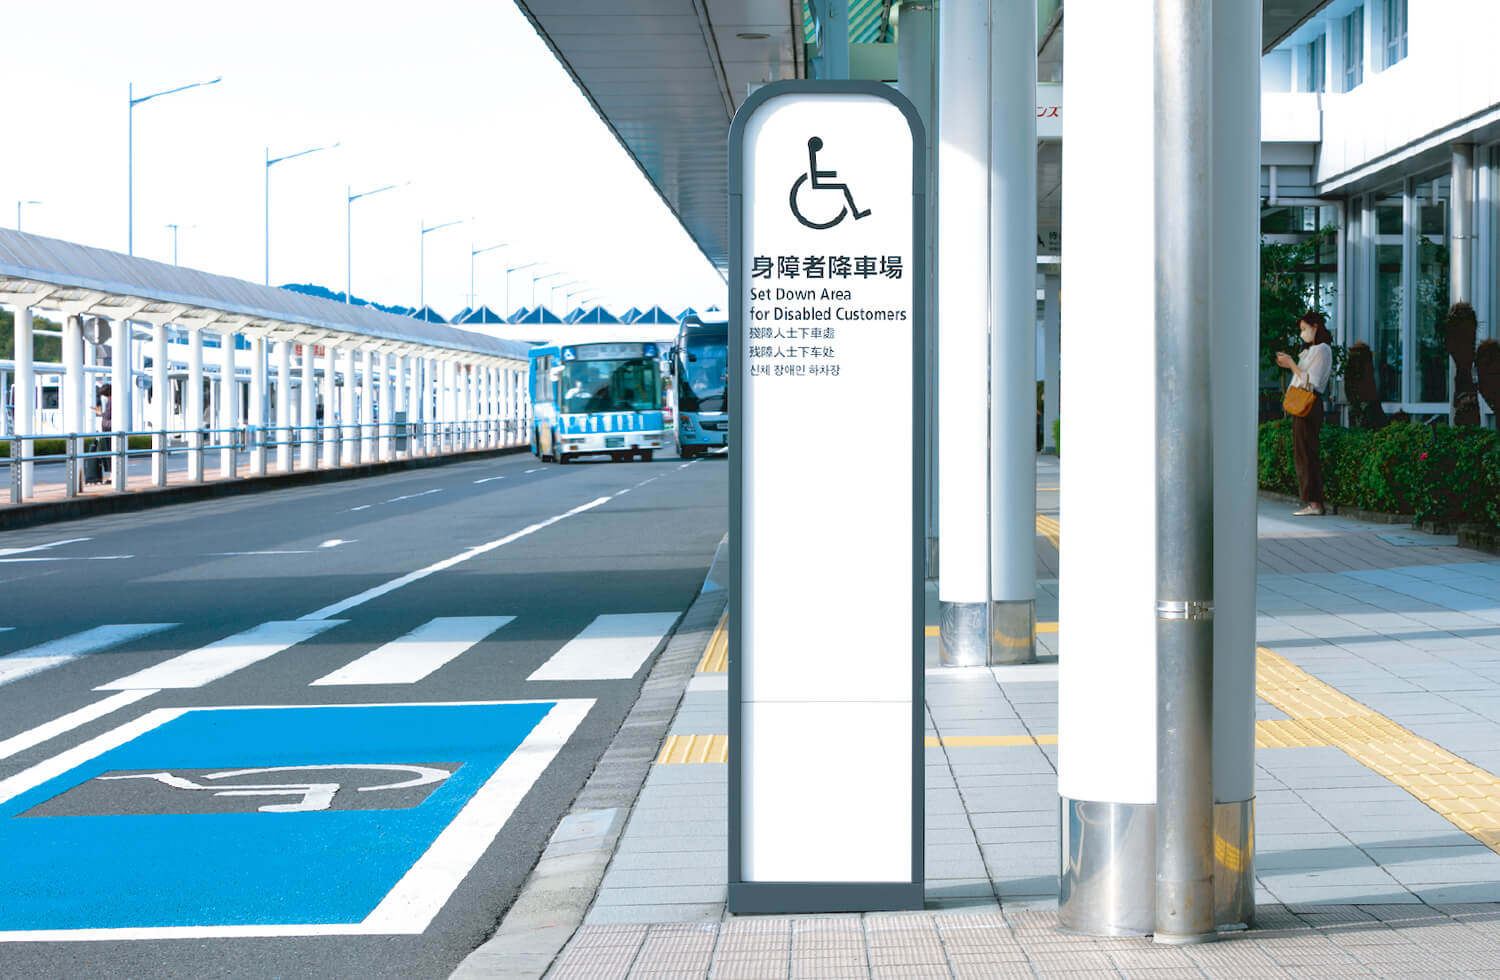 Platform for disabled visitors